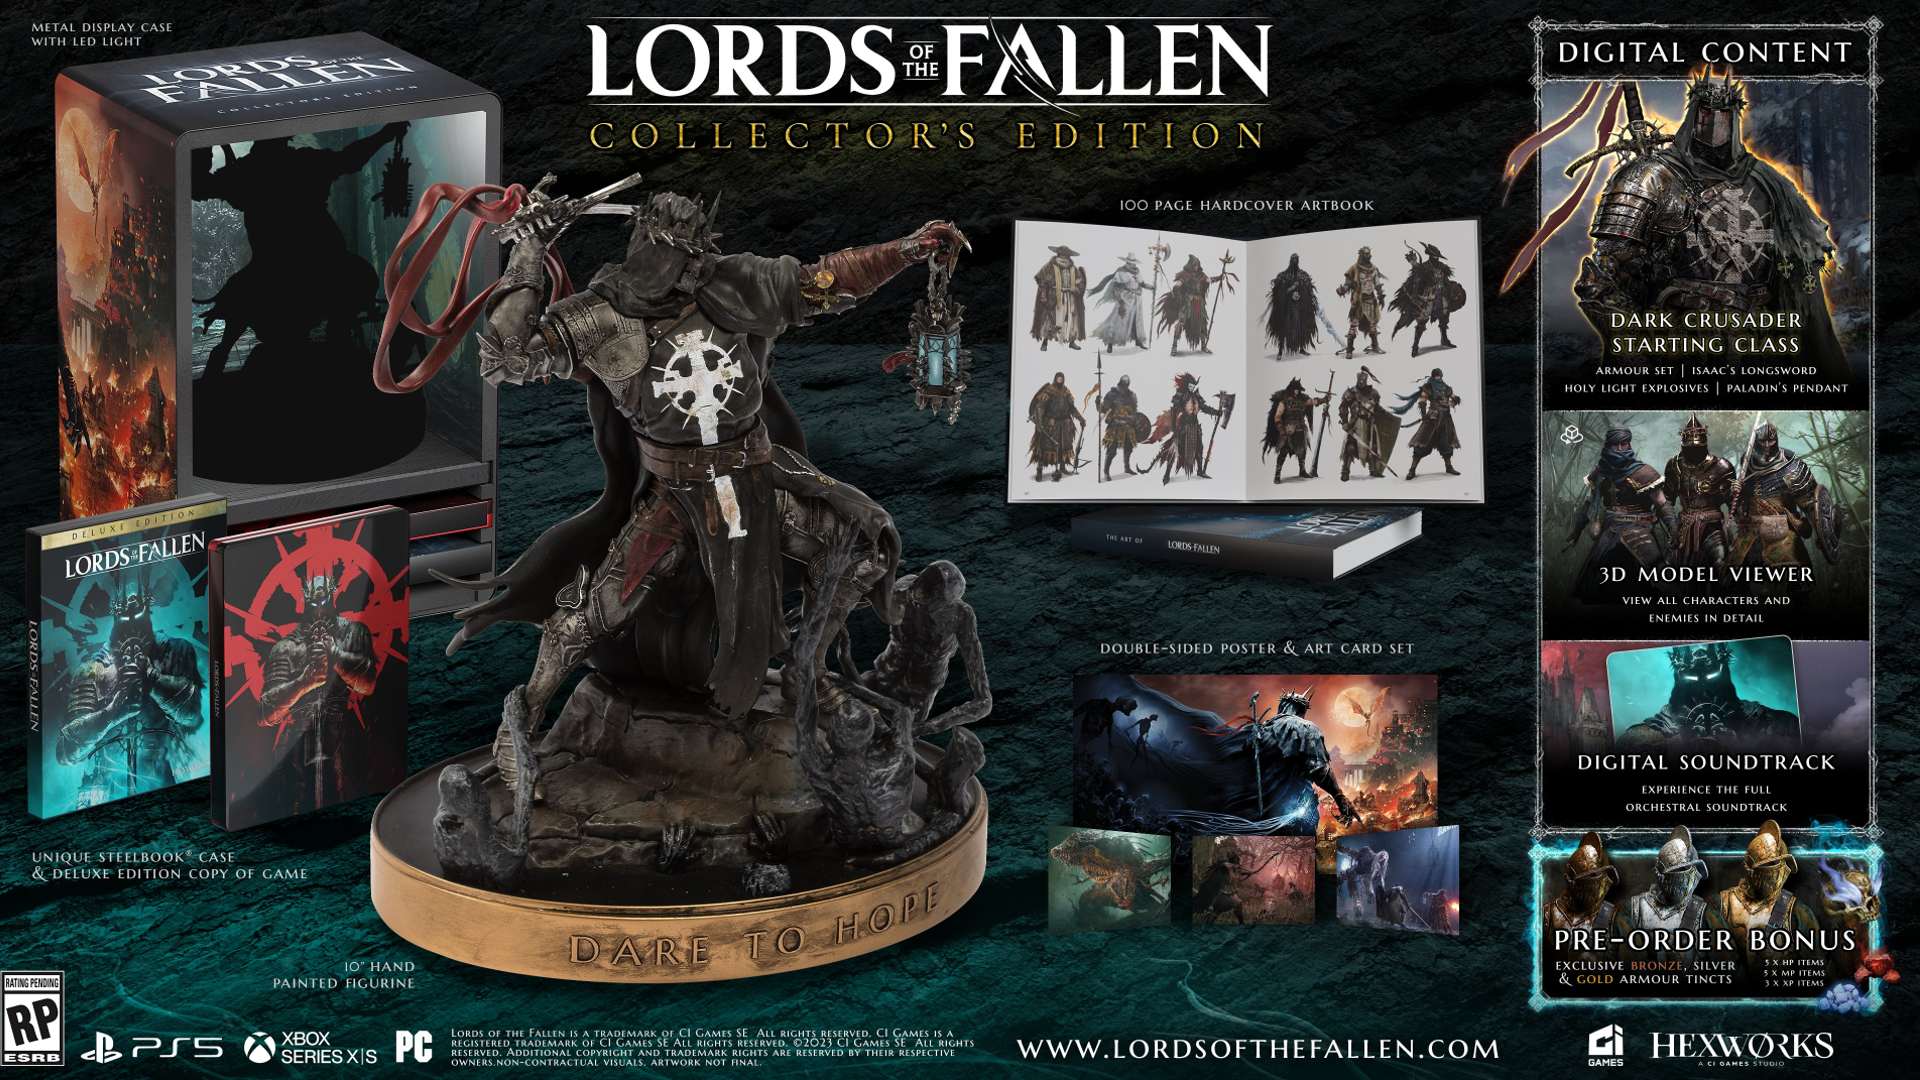 Lords of the Fallen - Mais detalhes revelados